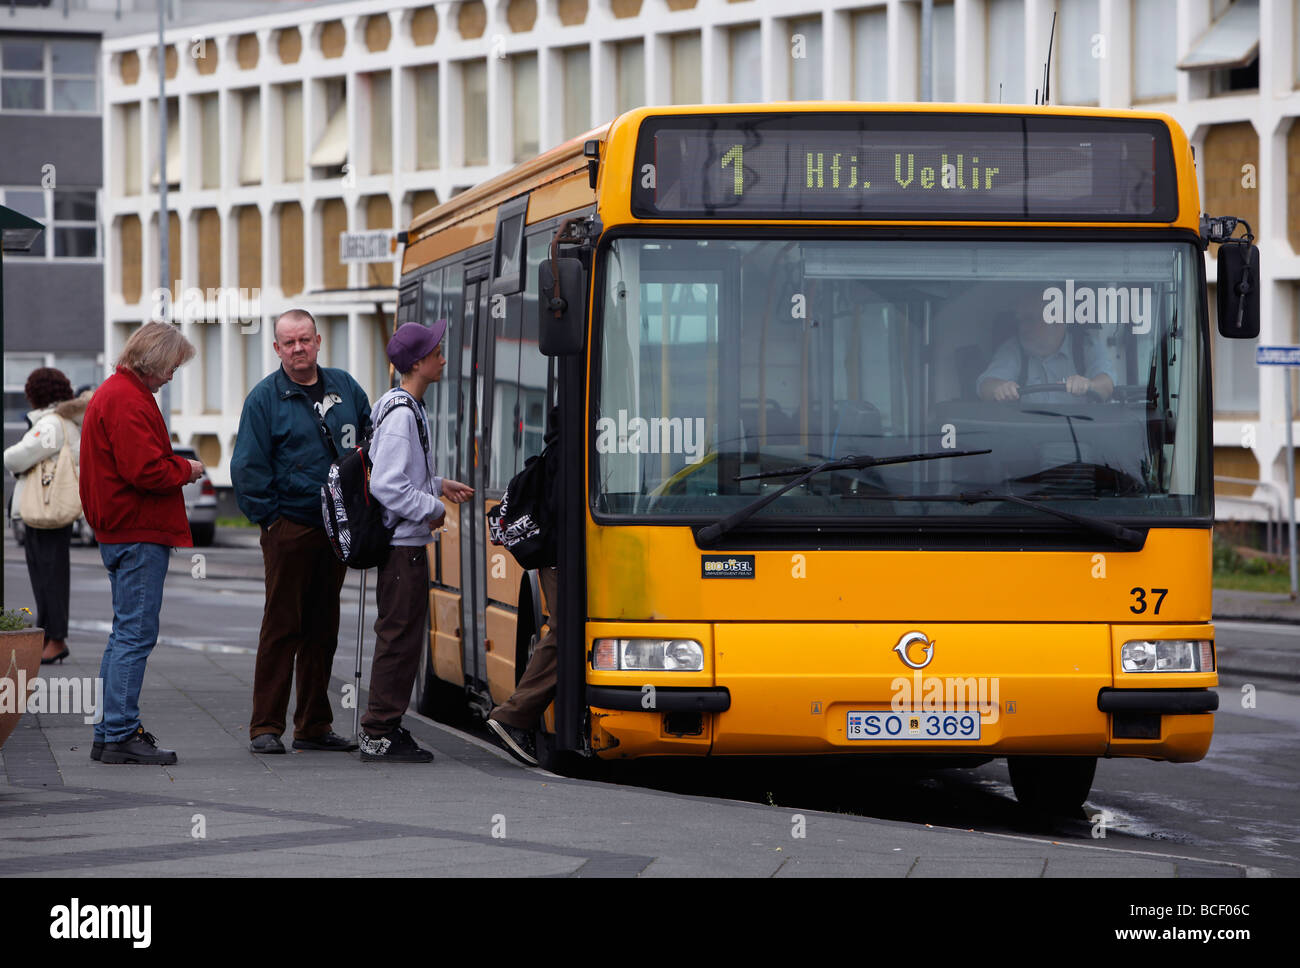 People boarding a city bus, Reykjavík, Iceland Stock Photo